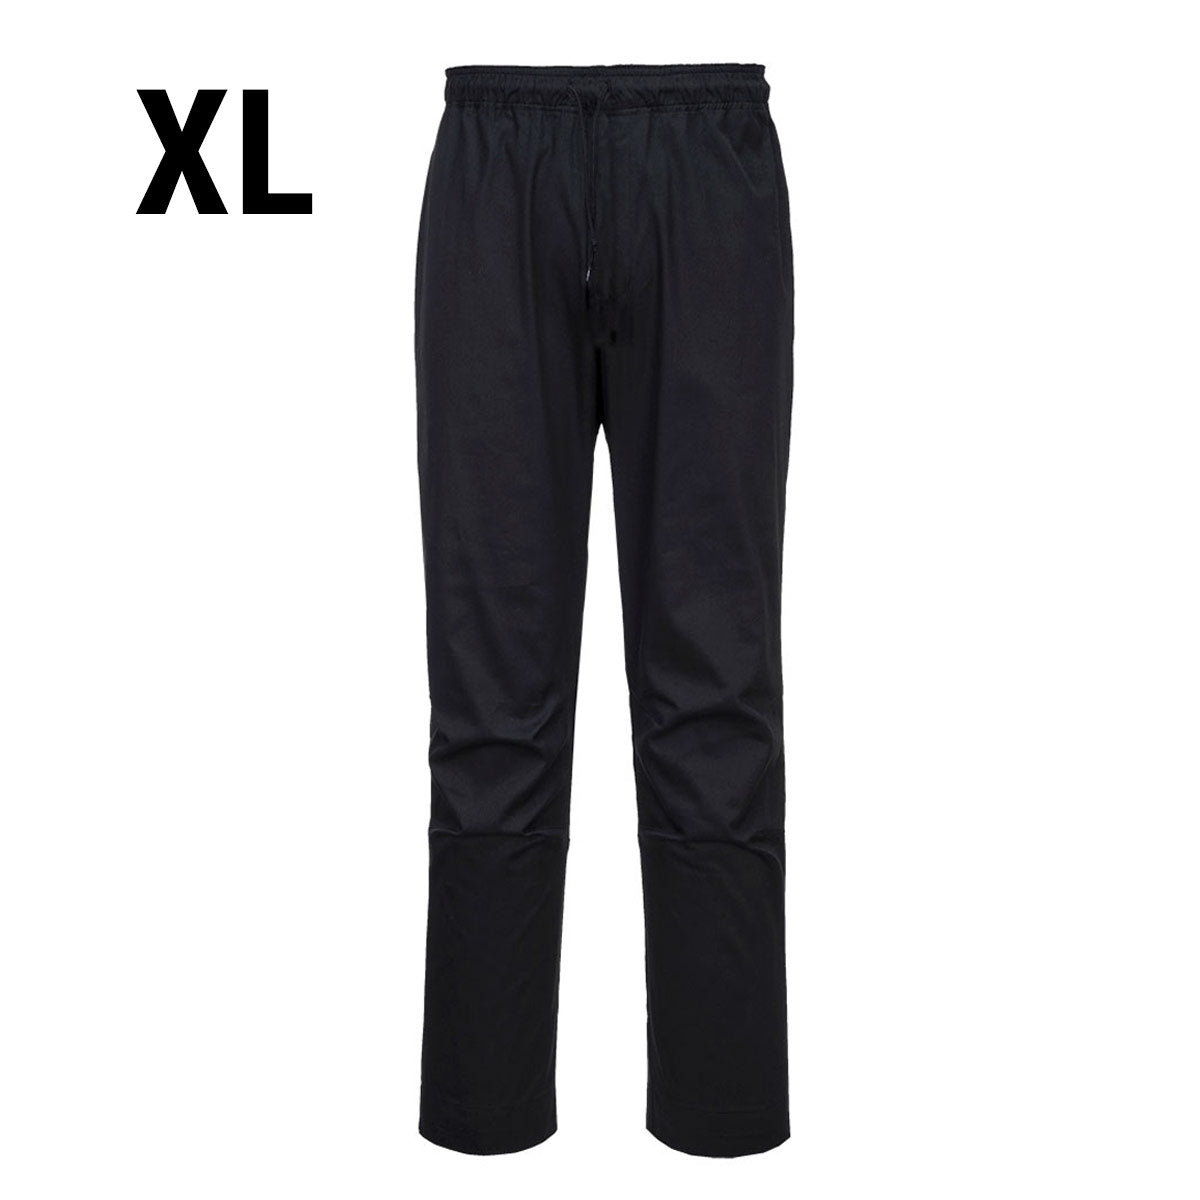 MeshAir Pro bukse - Svart - Størrelse: XL